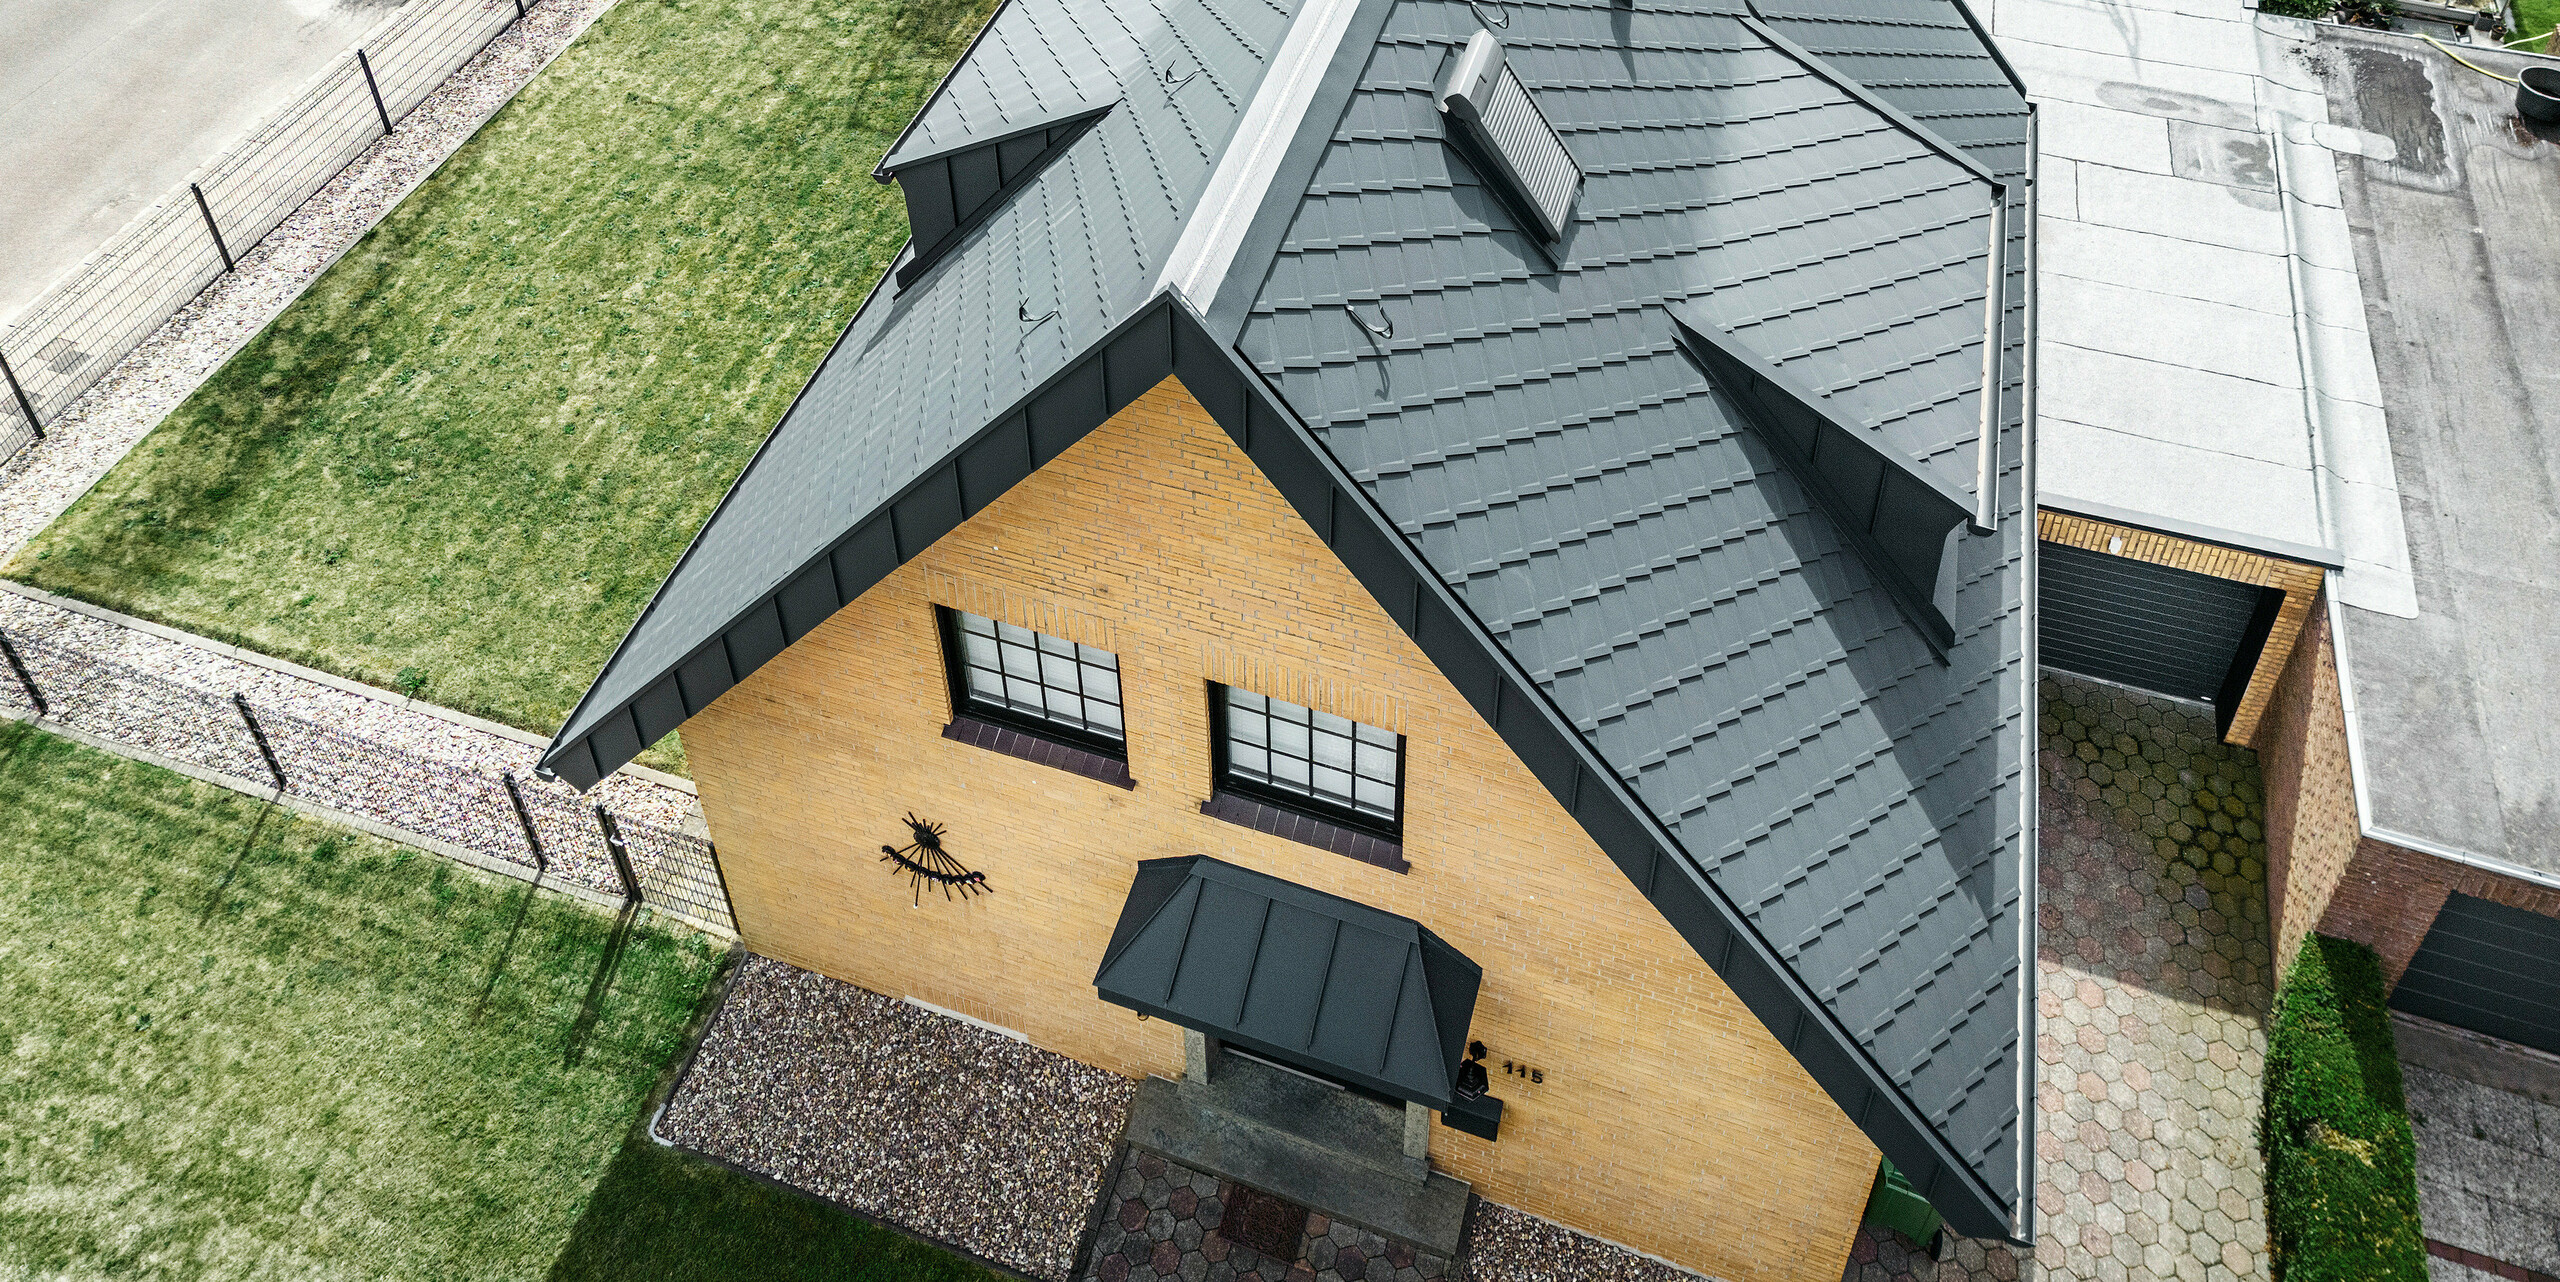 PREFA Dachraute 29 × 29, PREFALZ, jHängerinne sowie Ablaufrohr in der Farbe P.10 Anthrazit zieren ein Einfamilienhaus in Tönisvorst.